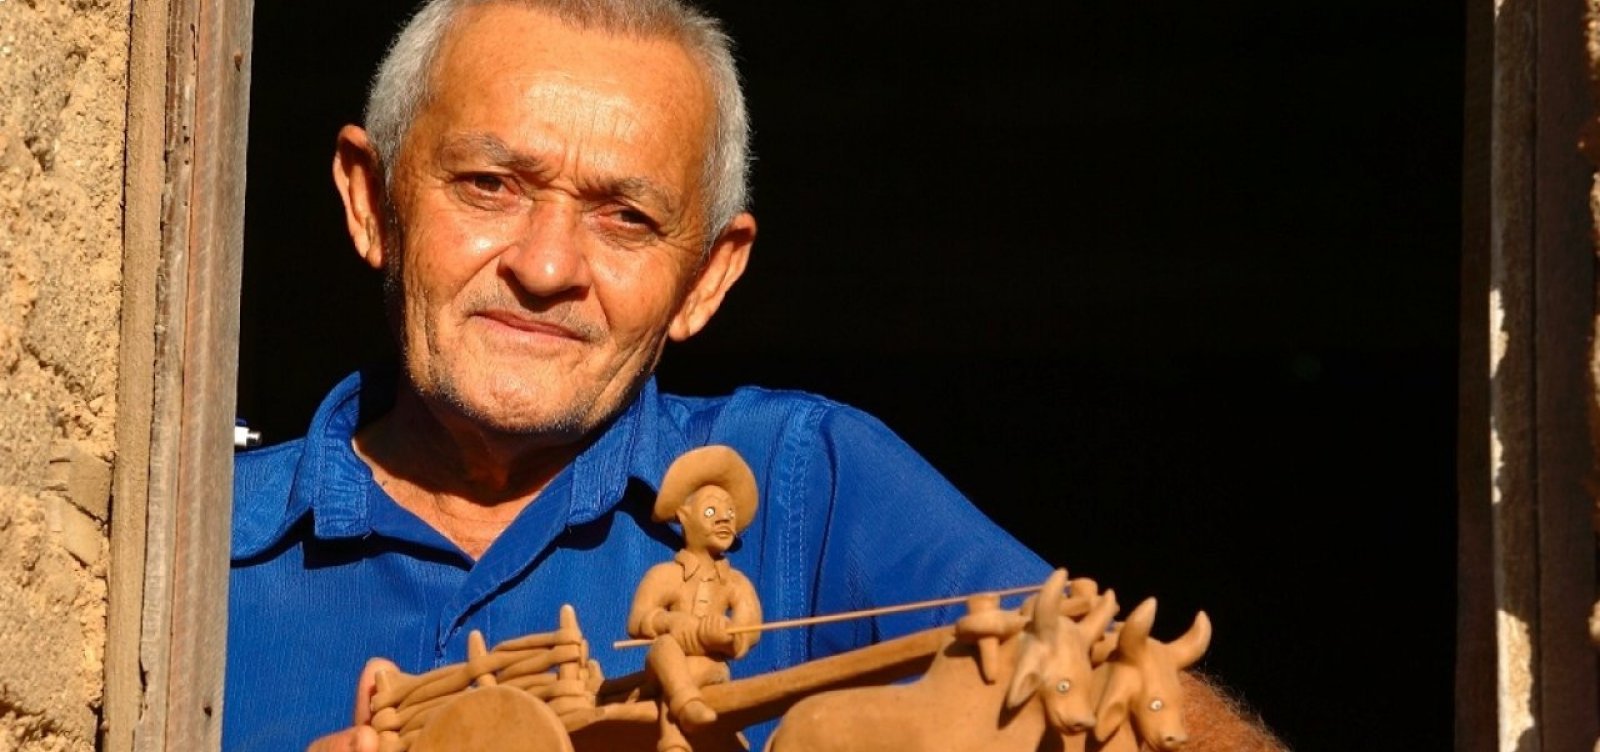 Morre o artesão Severino Vitalino, aos 78 anos, em Caruaru